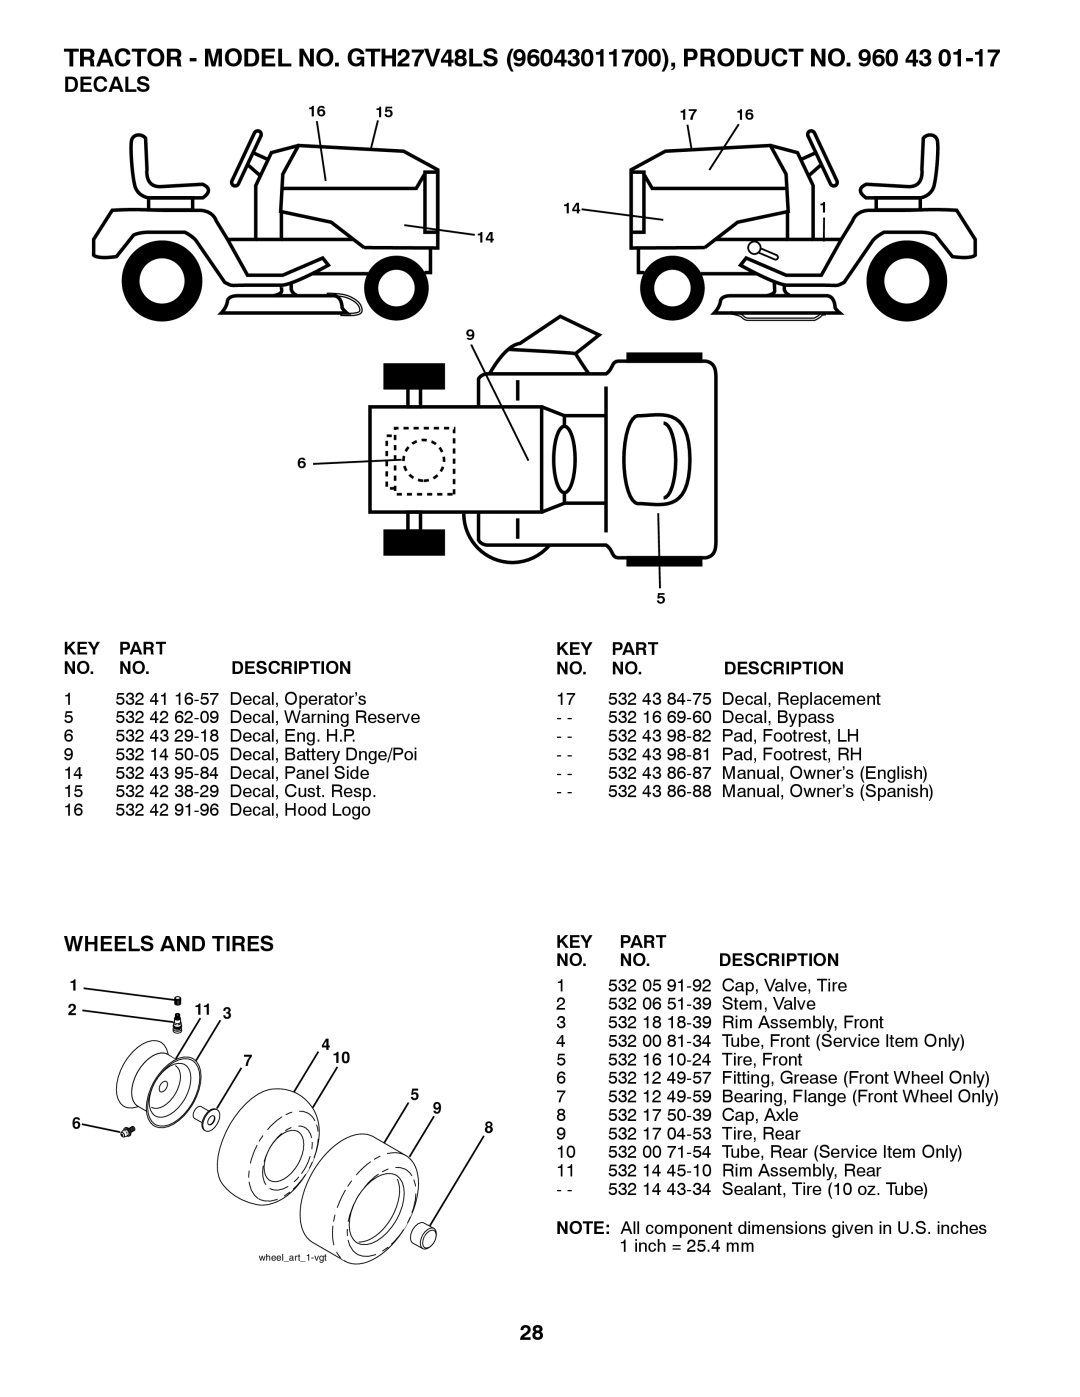 Husqvarna TRACTOR - MODEL NO. GTH27V48LS 96043011700, PRODUCT NO. 960 43, Decals, Wheels And Tires, Part, Description 